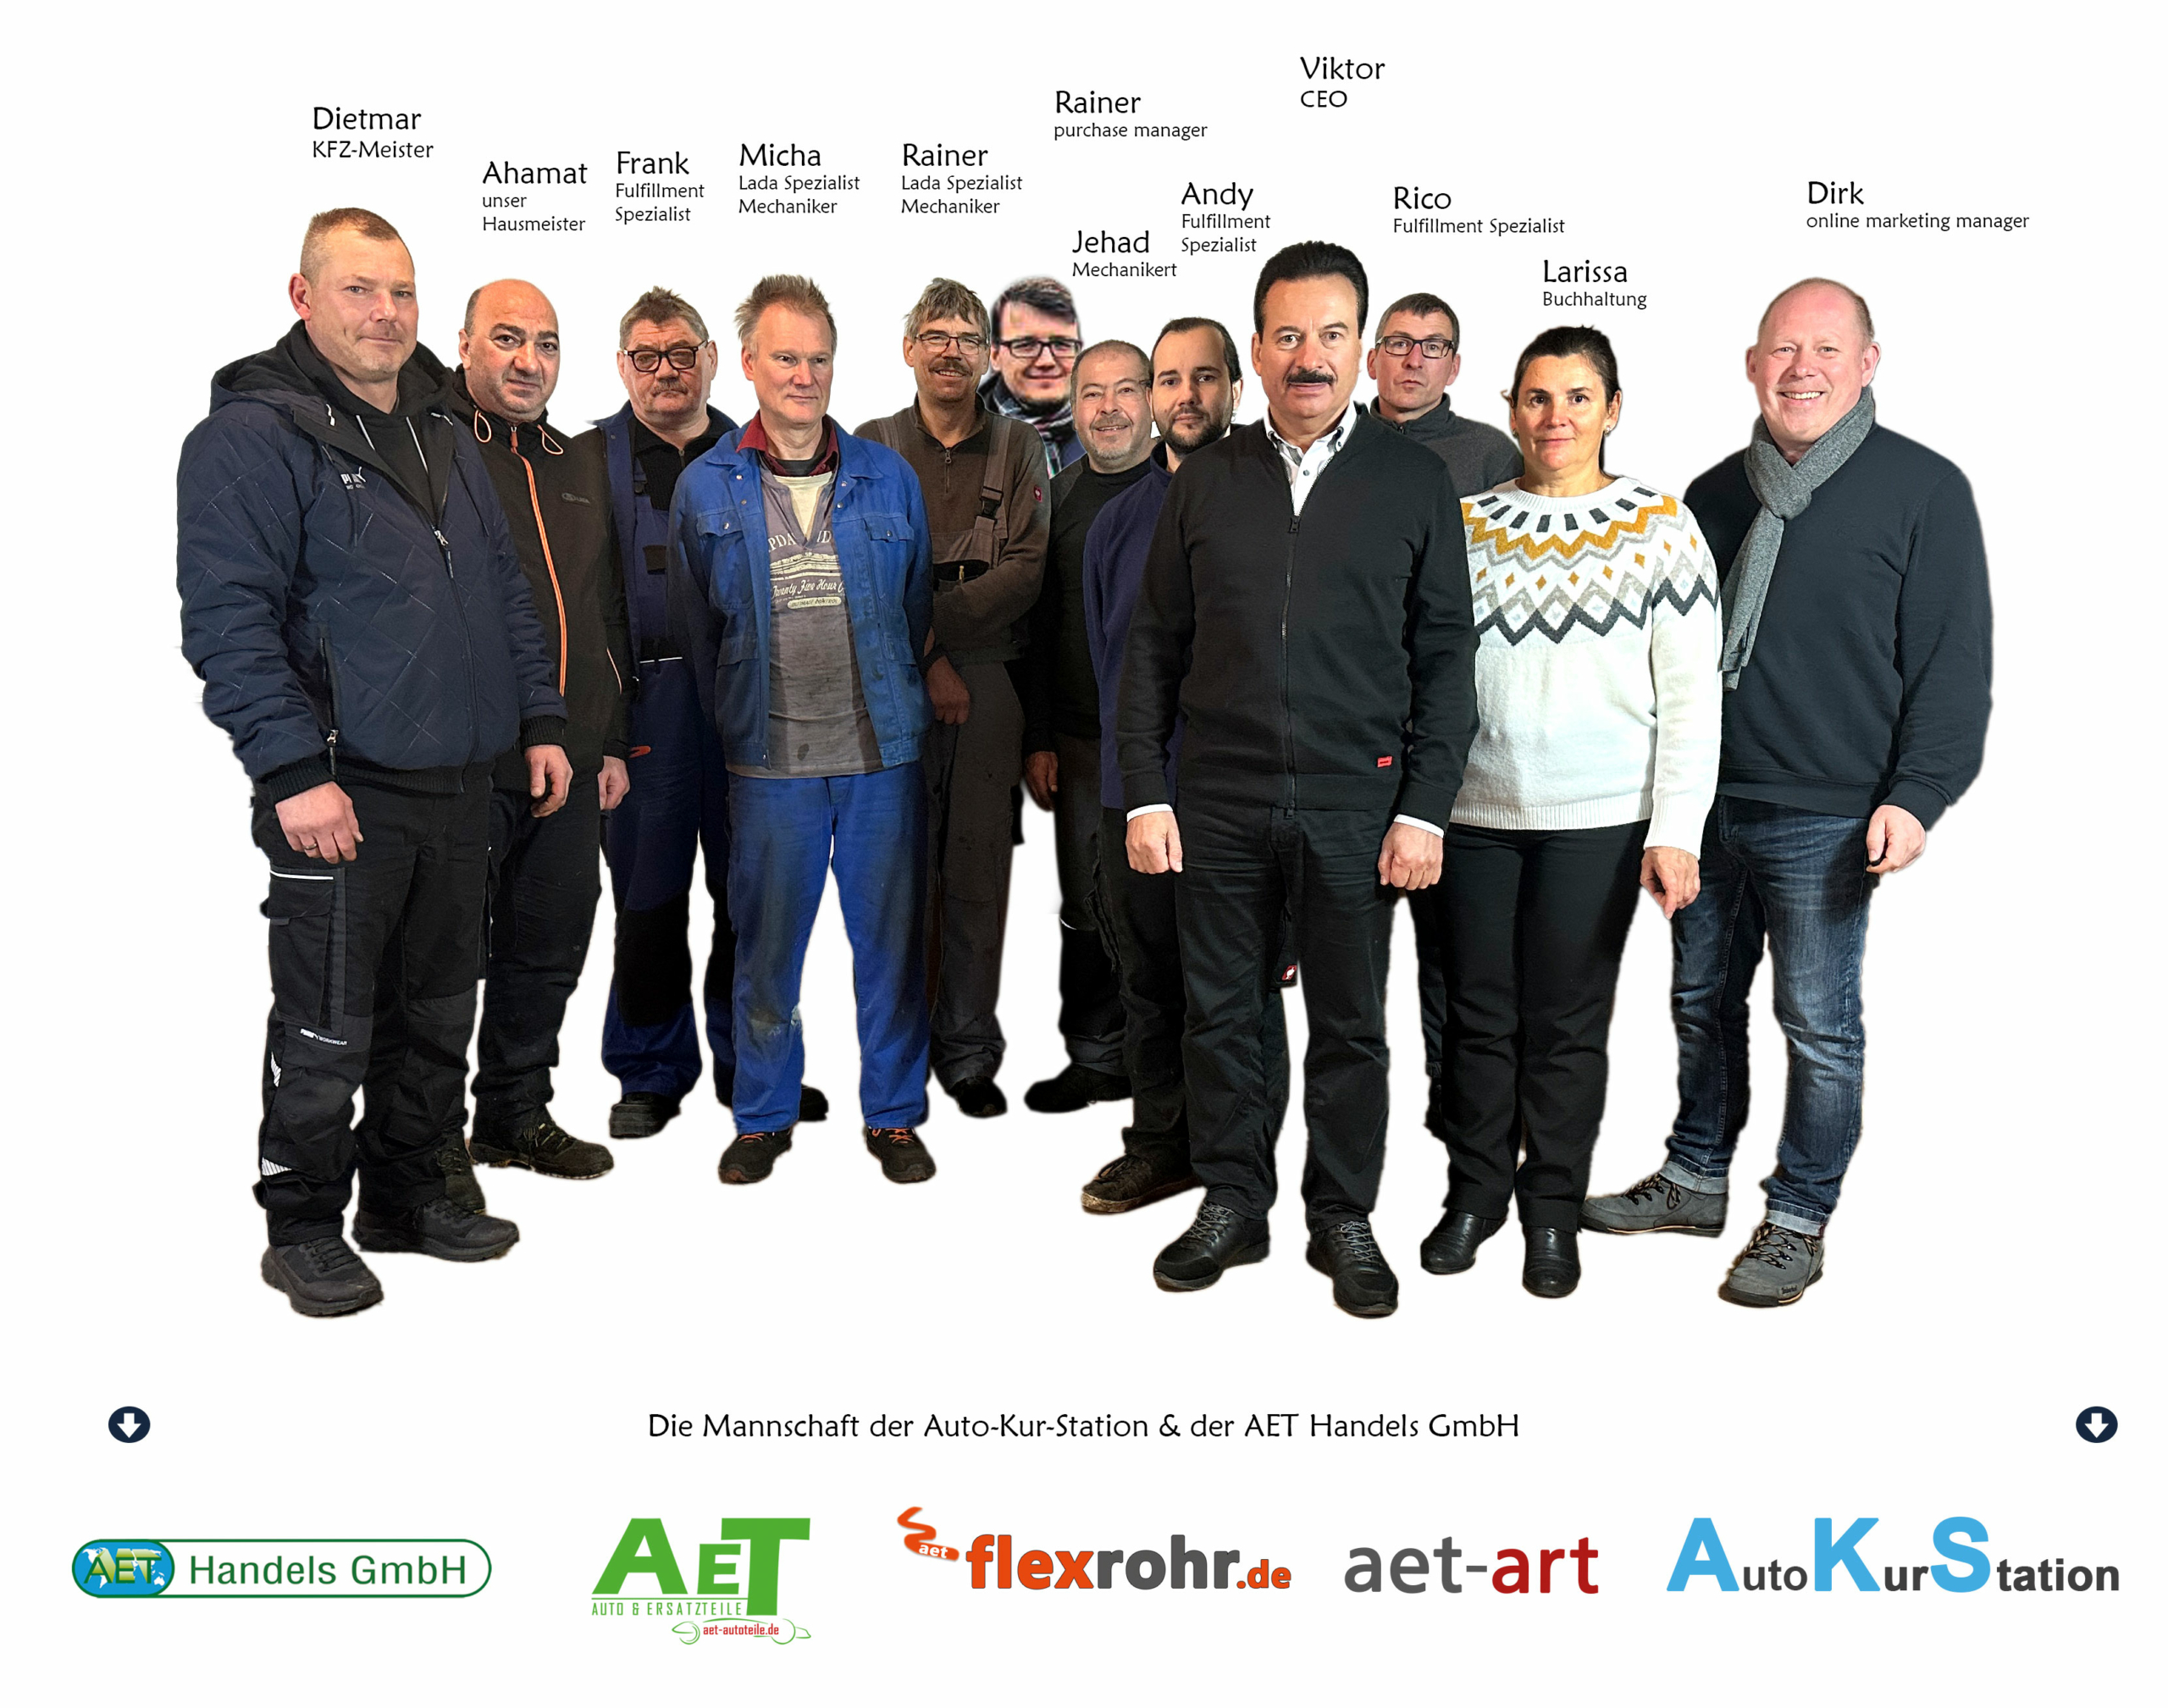 Das Team der AET Handels GmbH und der Auto Kur Station